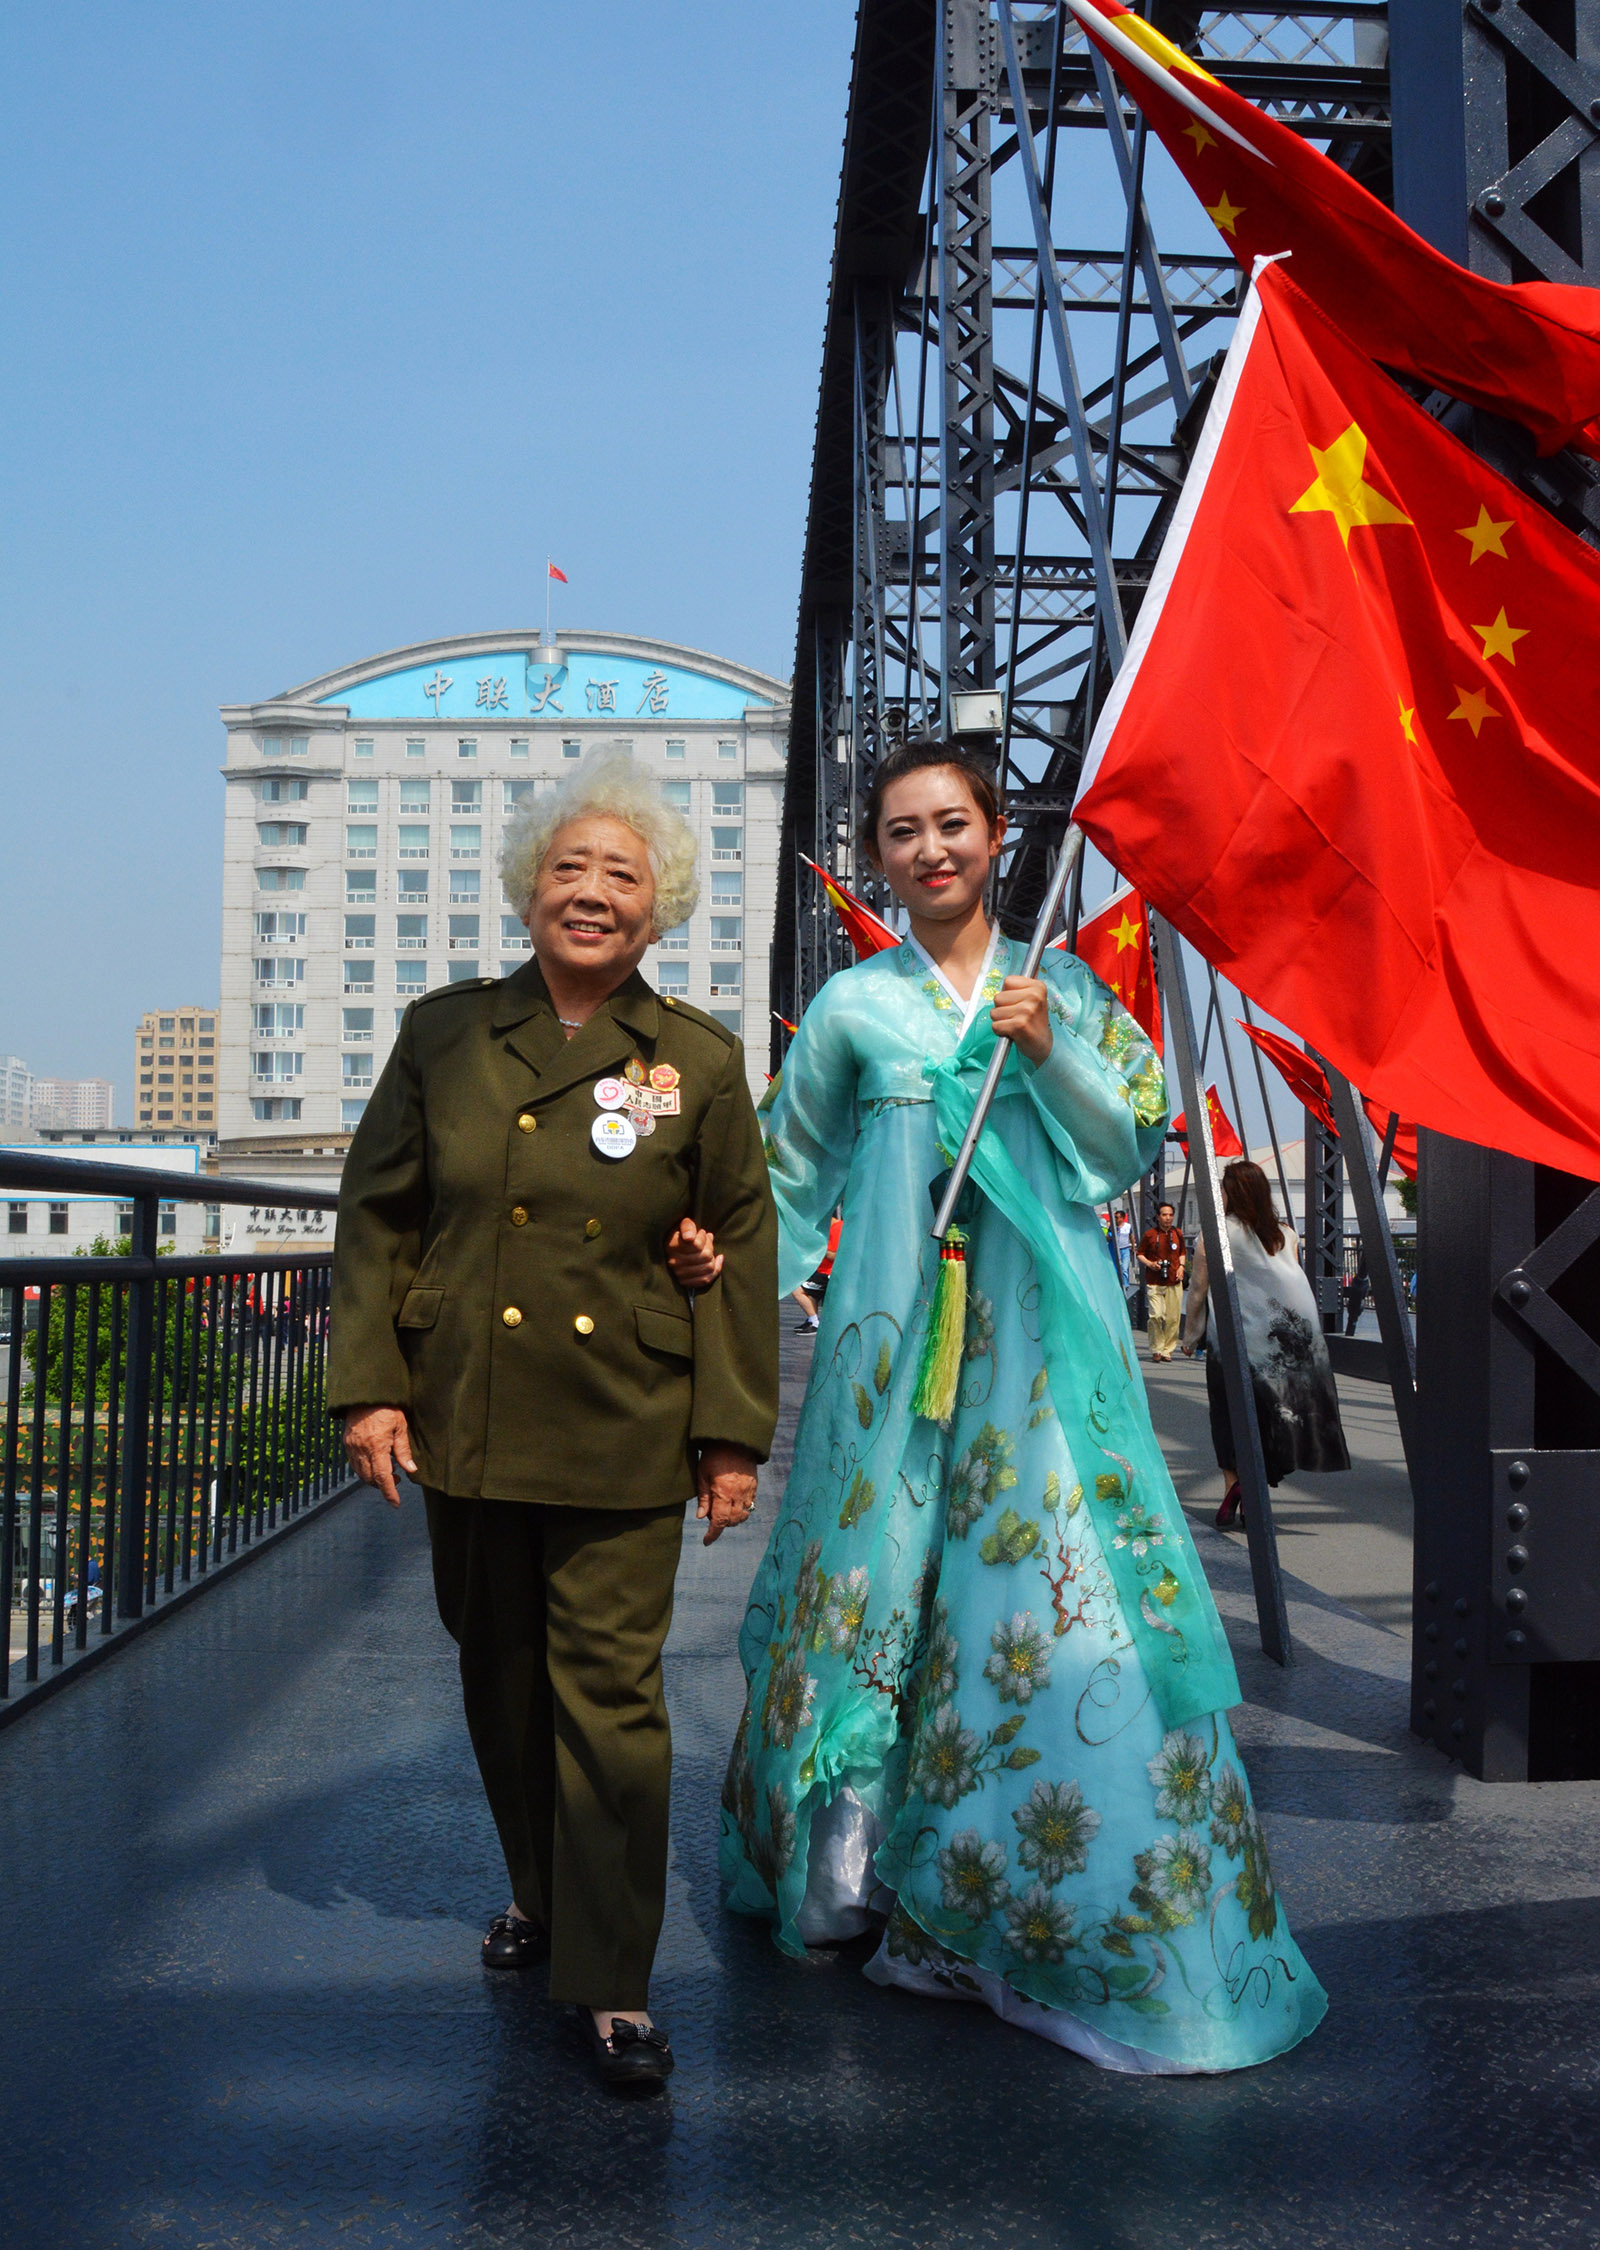 聶文婷(高中組)遼寧《崢嶸歲月》 朝鮮族姐姐手握五星紅旗跟隨軍人奶奶來到鴨綠江大橋祭奠抗美援朝犧牲的戰士。搜索復制